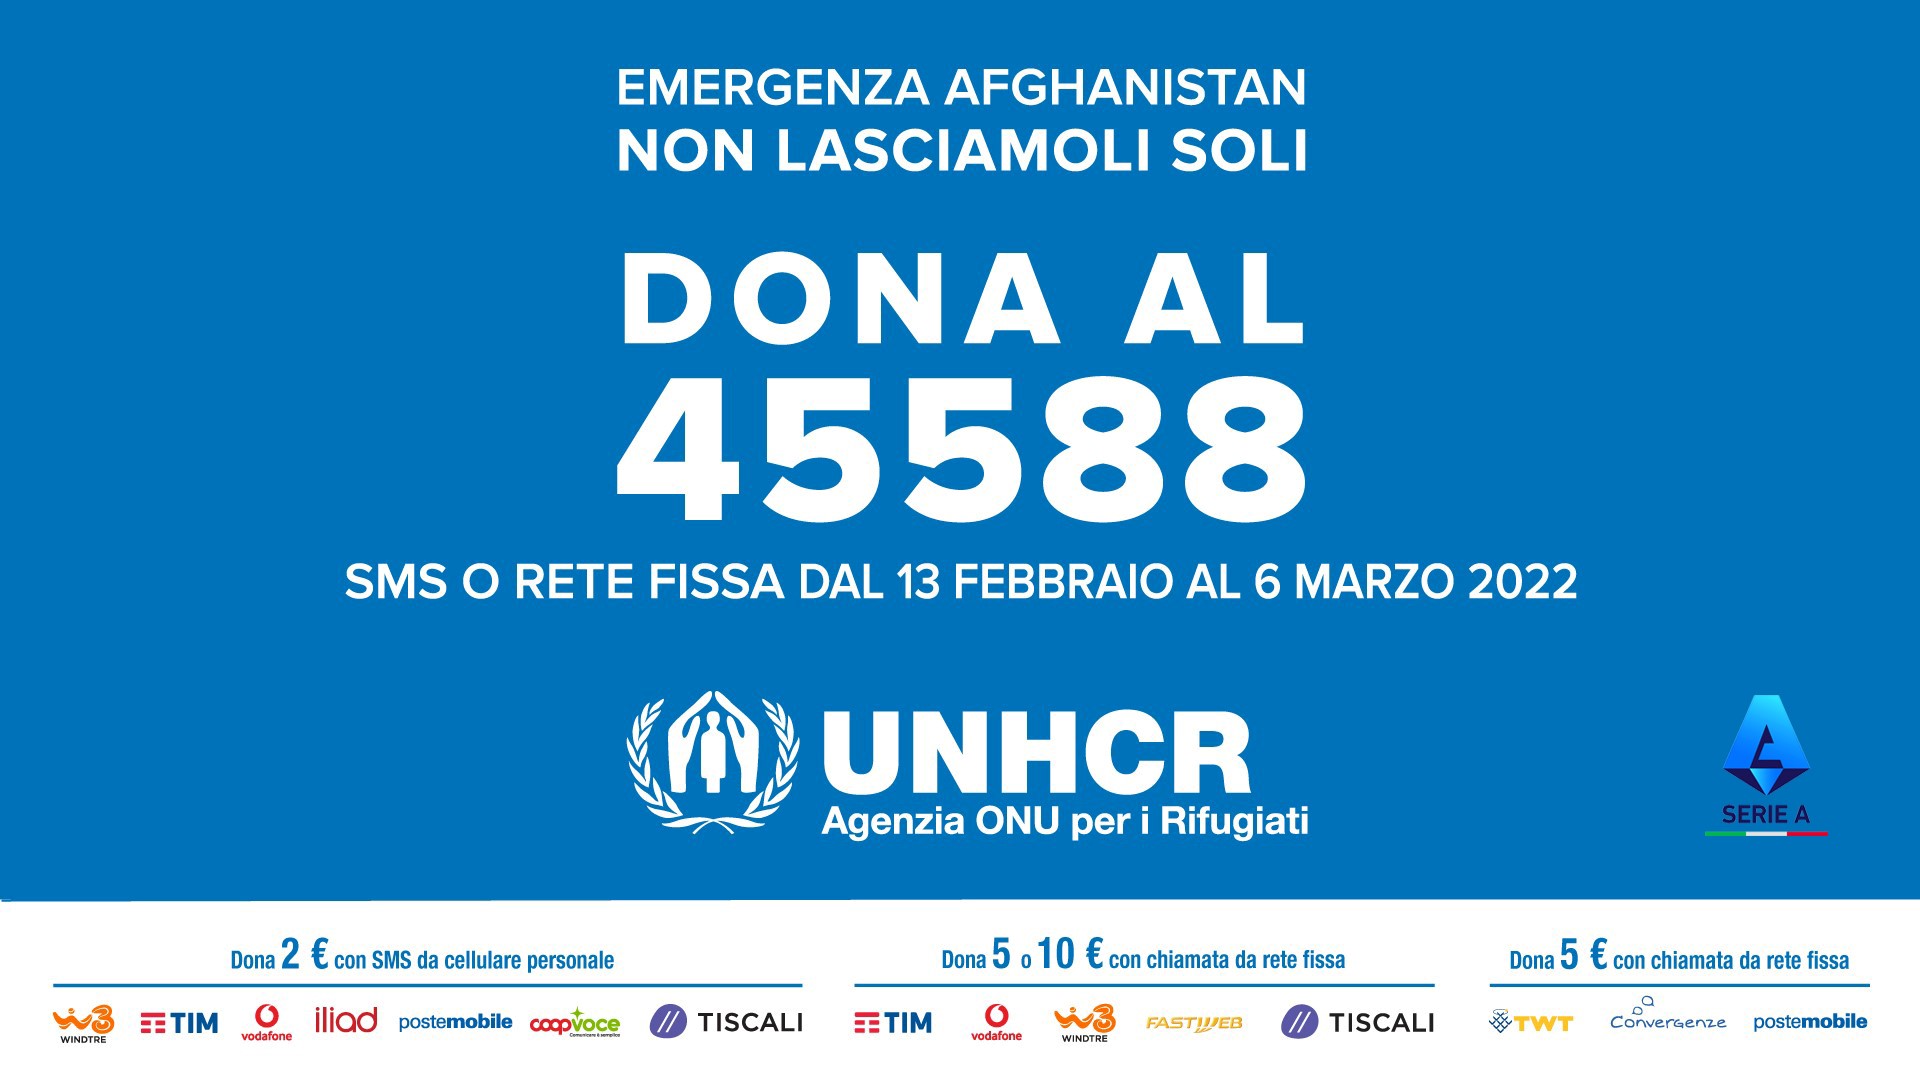 UNHCR – “Emergenza Afghanistan: non lasciamoli soli” 